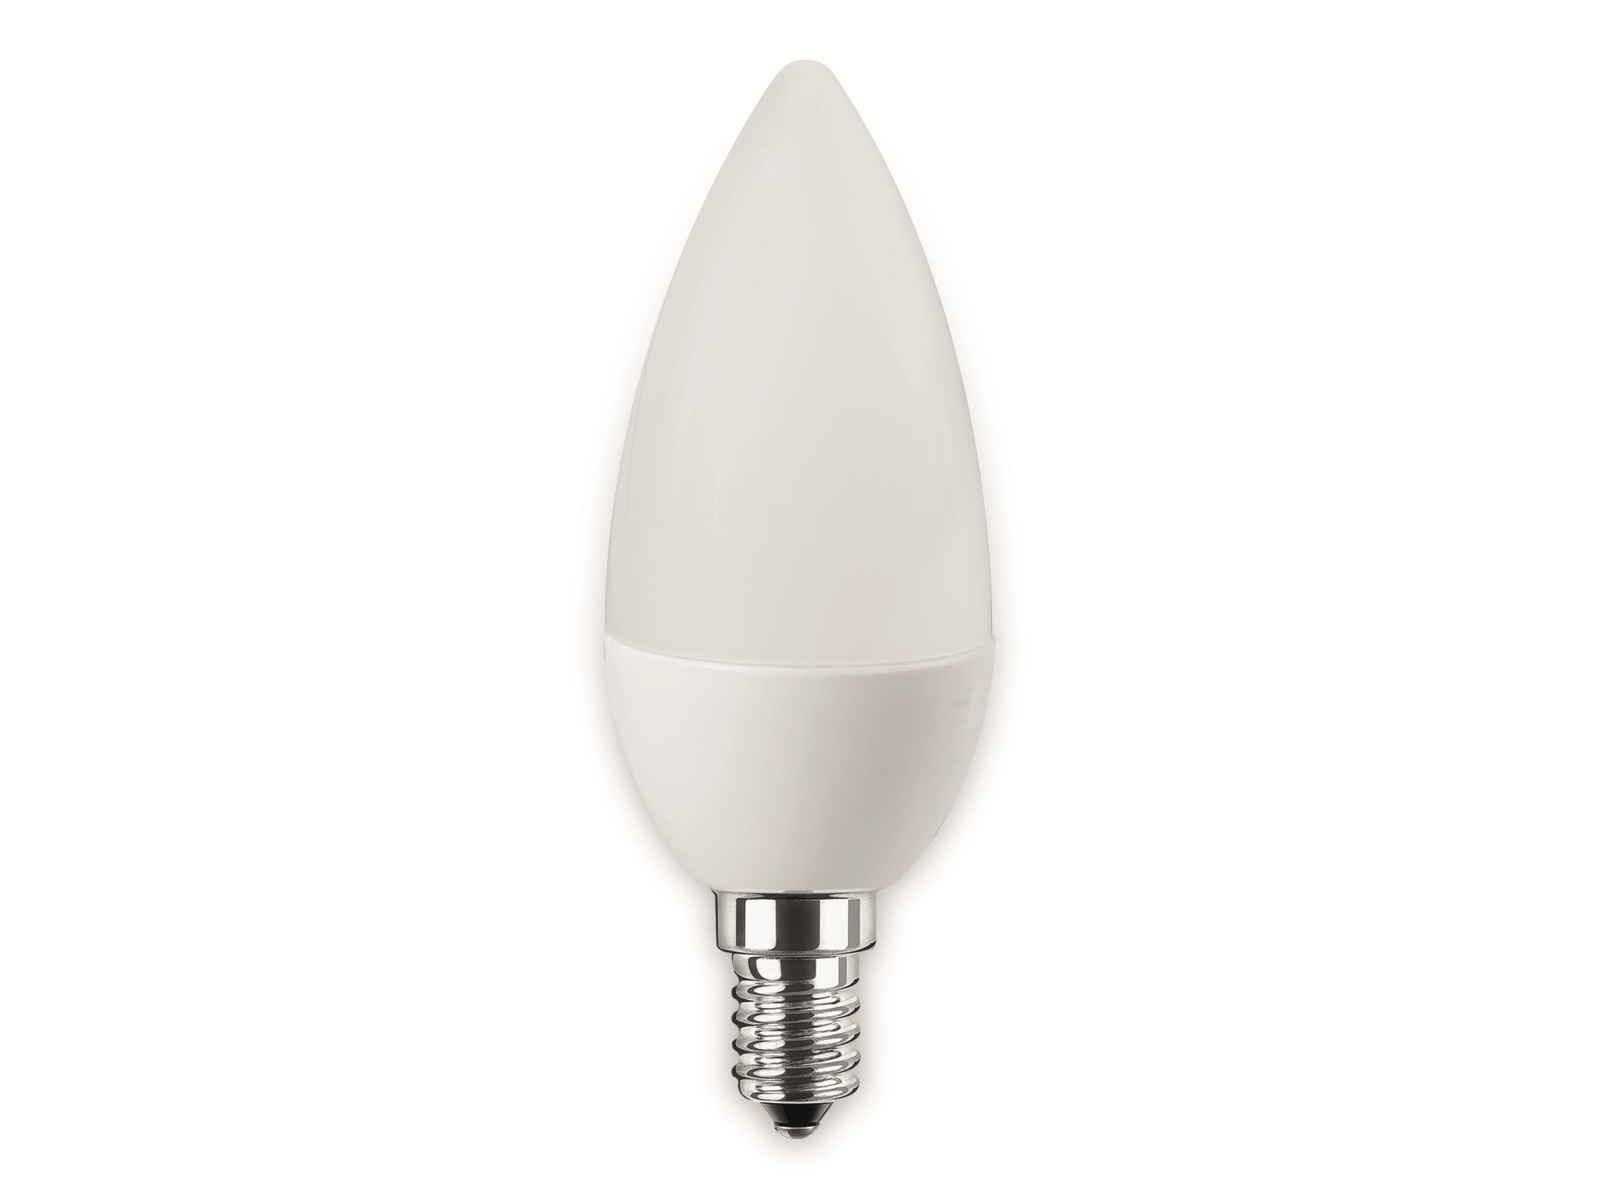 BLULAXA LED-SMD-Lampe, C35, E14, EEK: F, 8 W, 810 lm, 2700 K